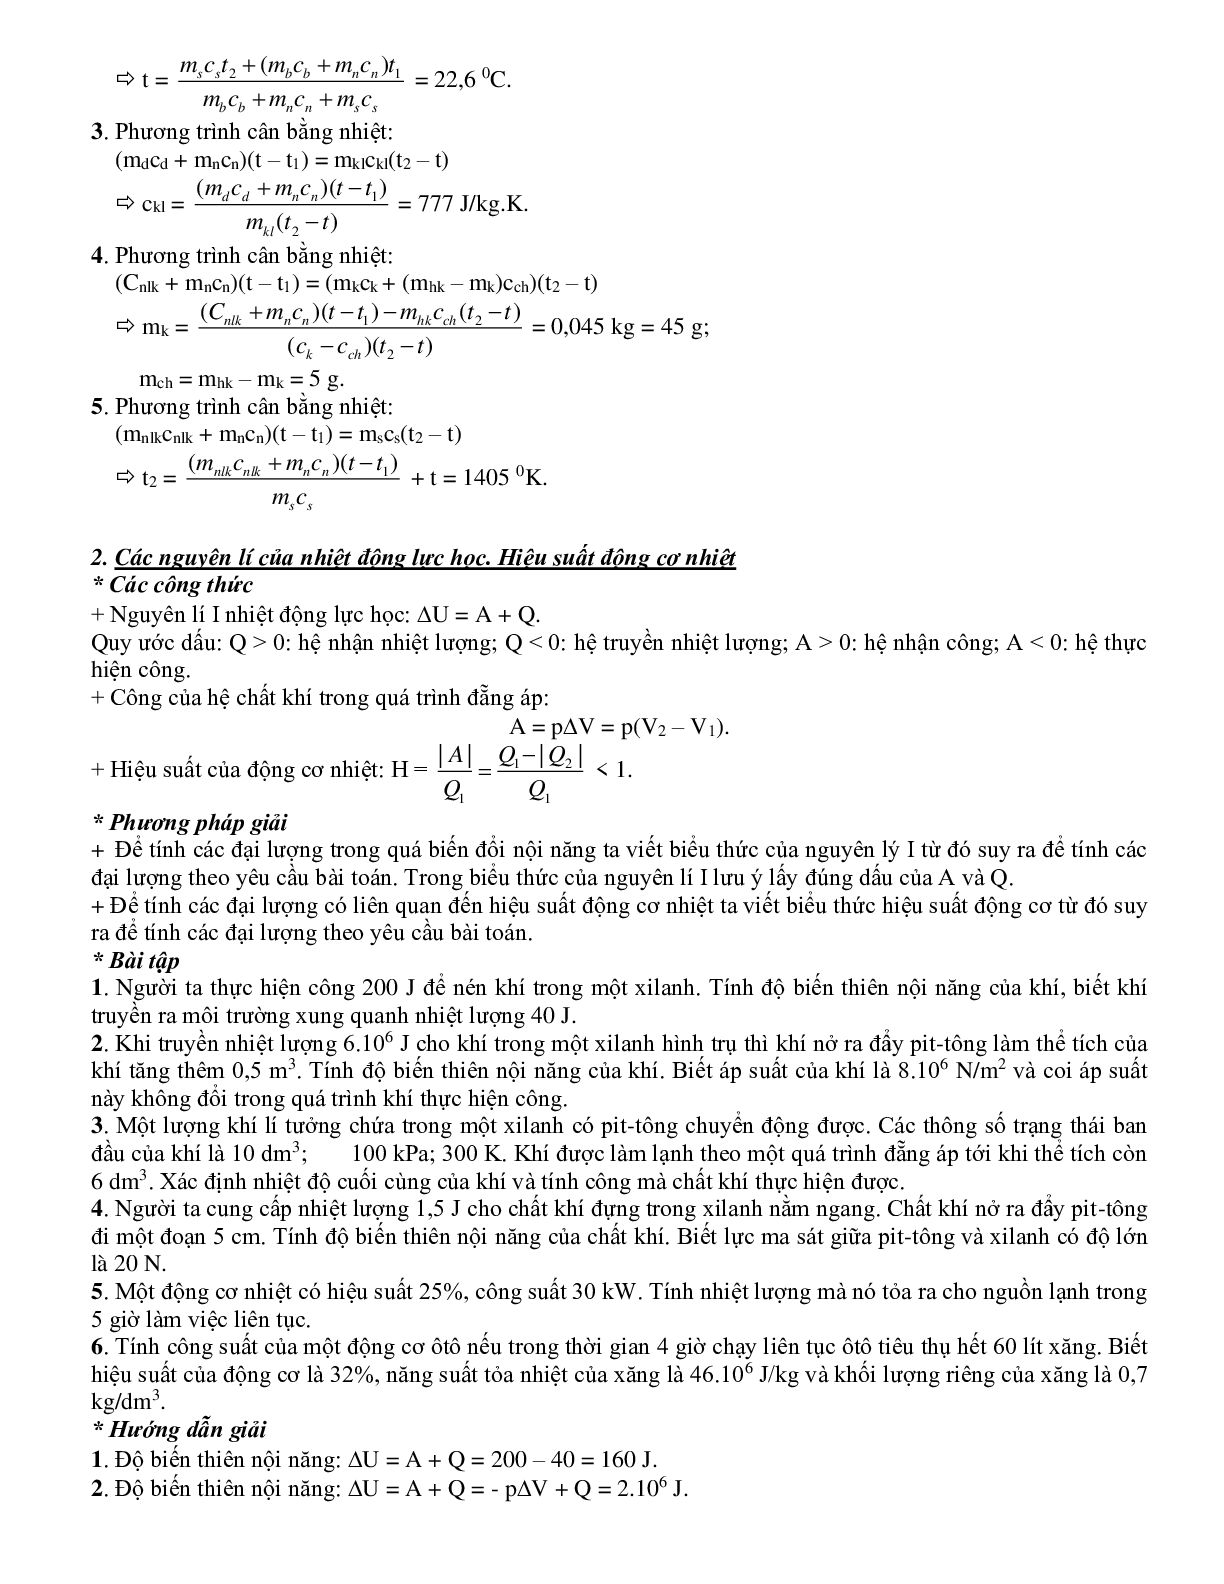 Chuyên đề Cơ sở của nhiệt động lực học môn Vật lý lớp 10 (trang 2)